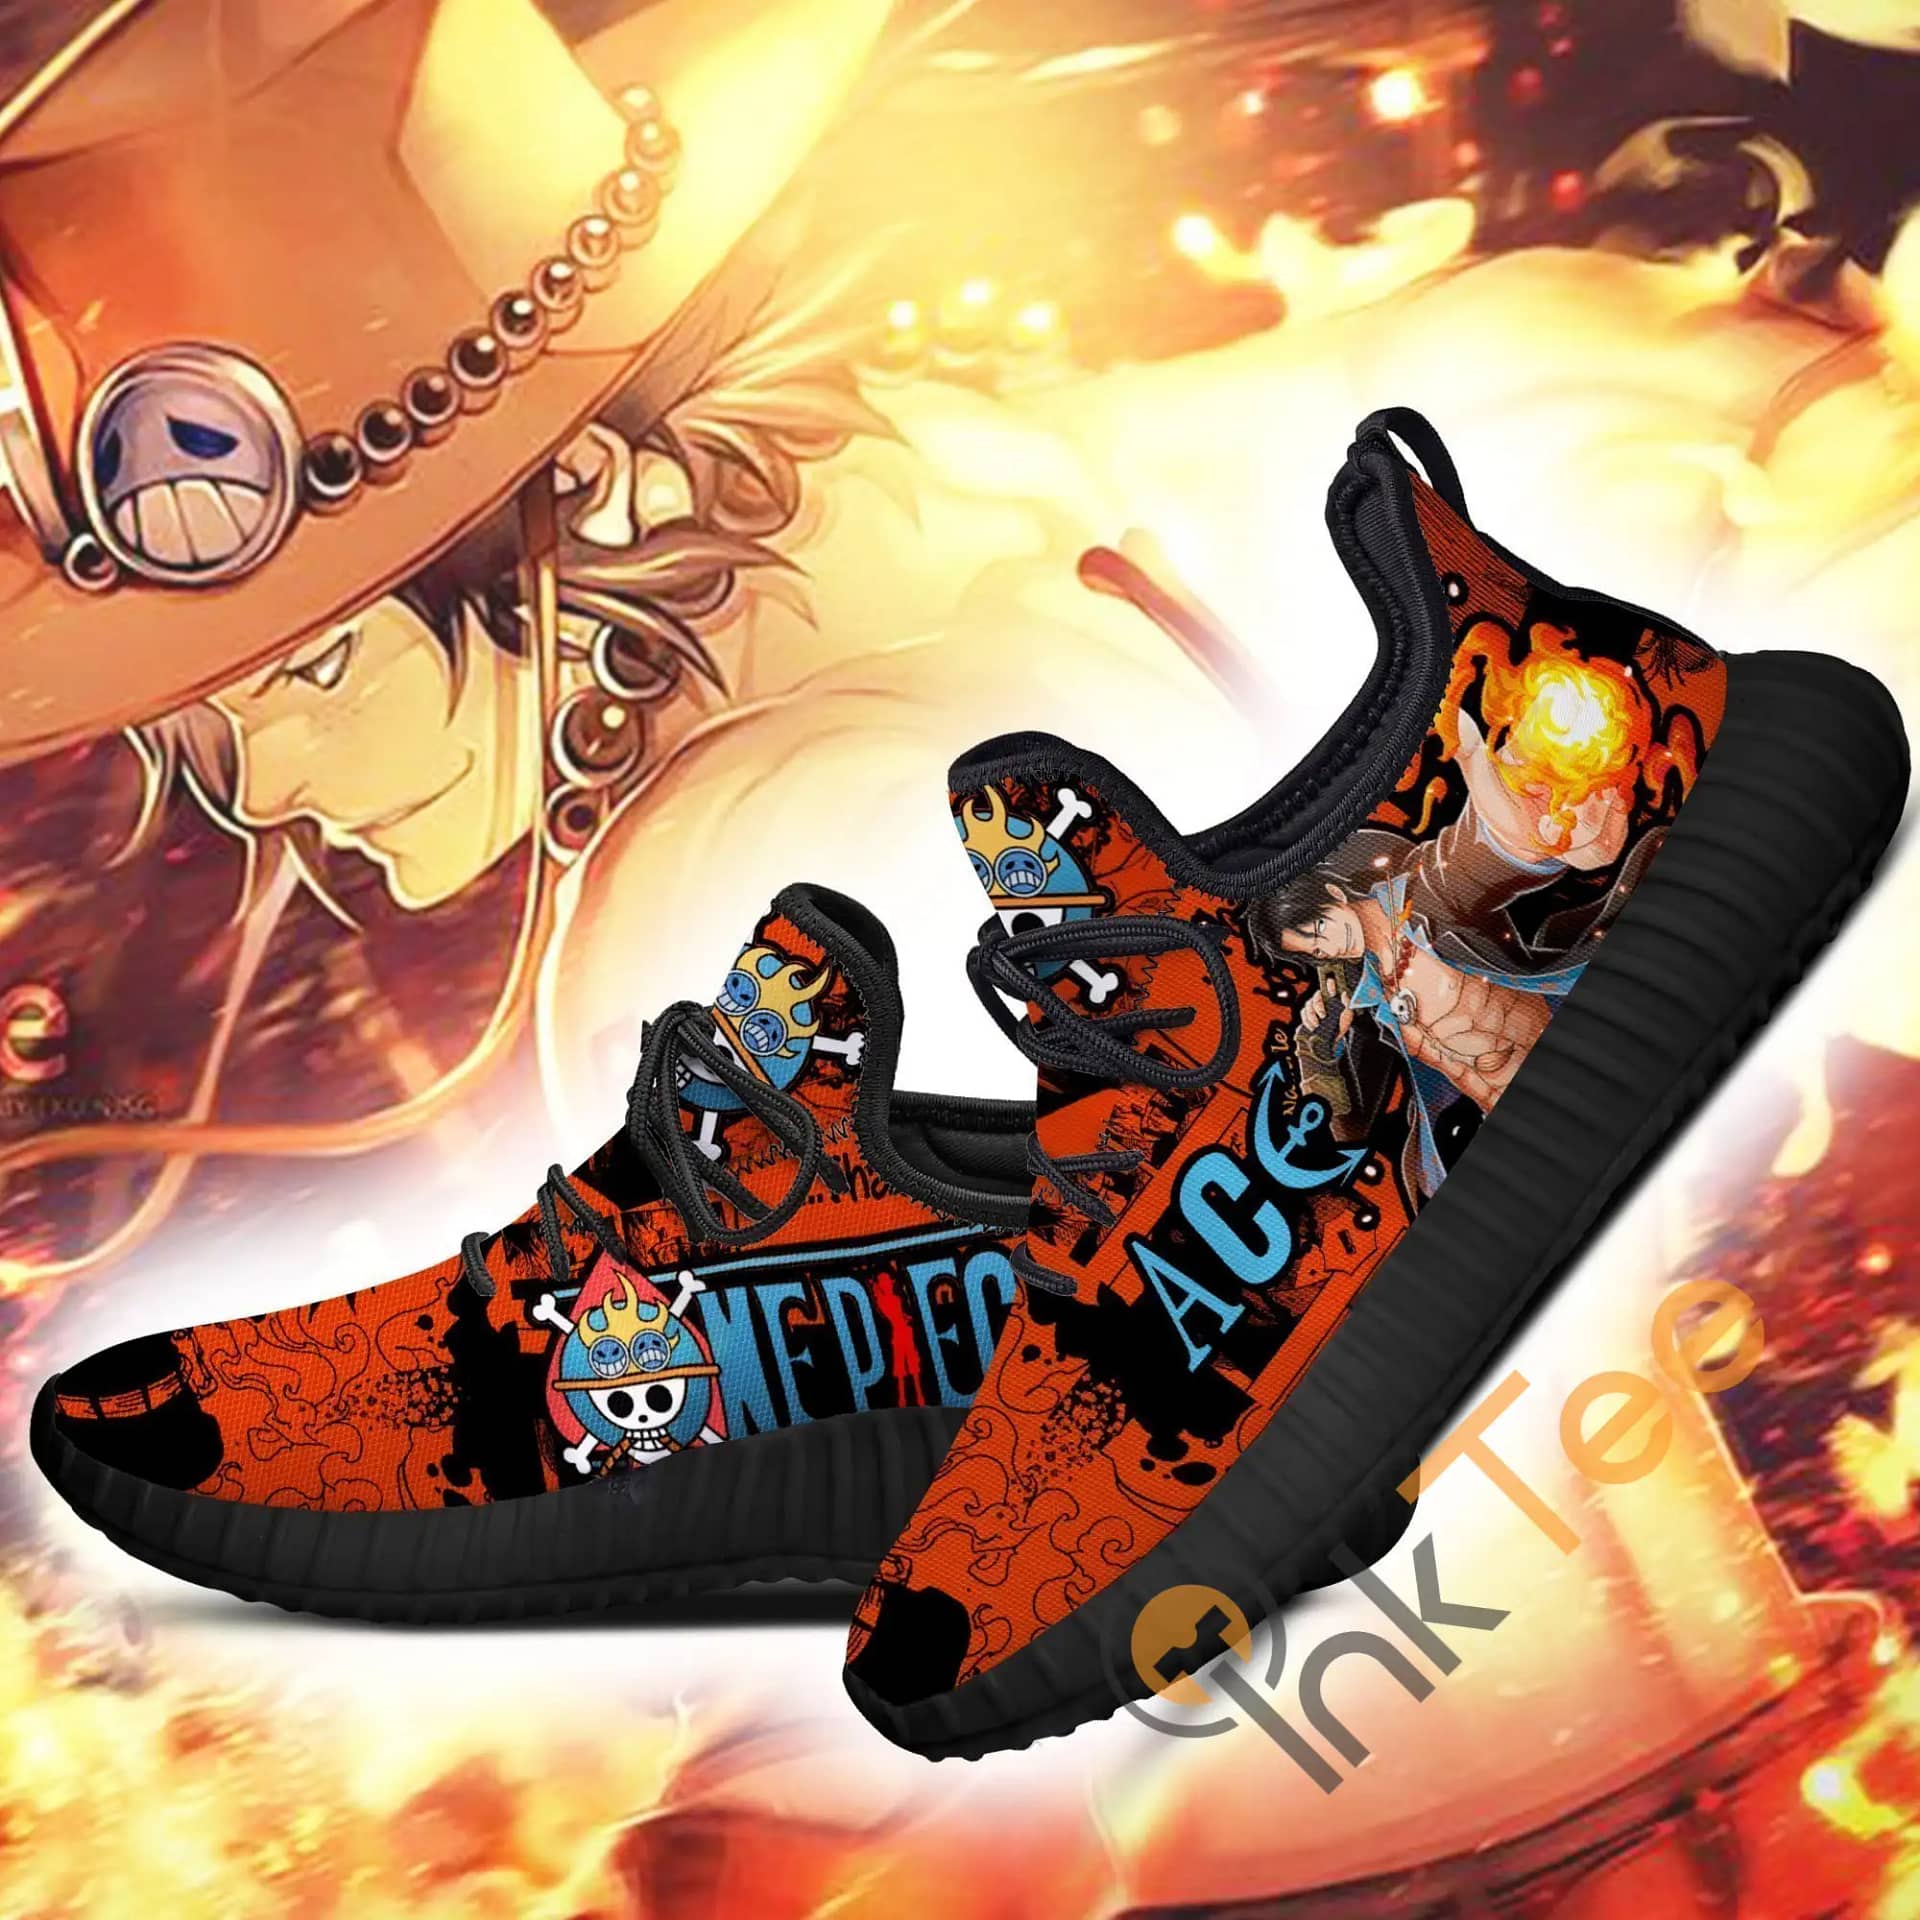 Portgas D. Ace One Piece Anime Amazon Reze Shoes